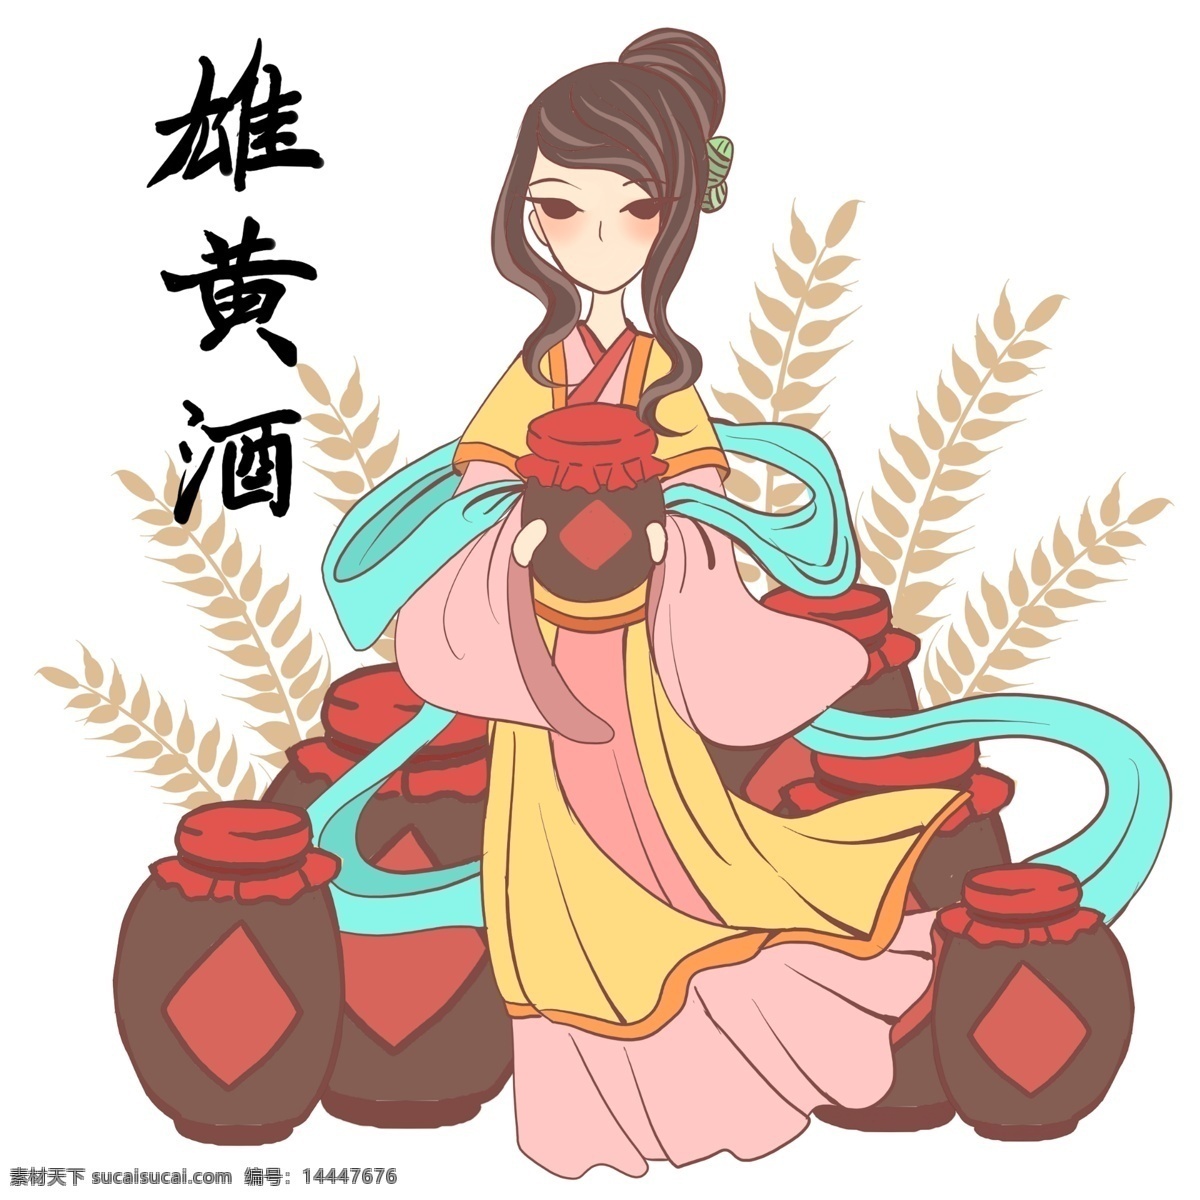 端午节 美人 雄黄酒 麦子 节日 习俗 丝绸 传统 汉服 古风 美丽 民族 饮品